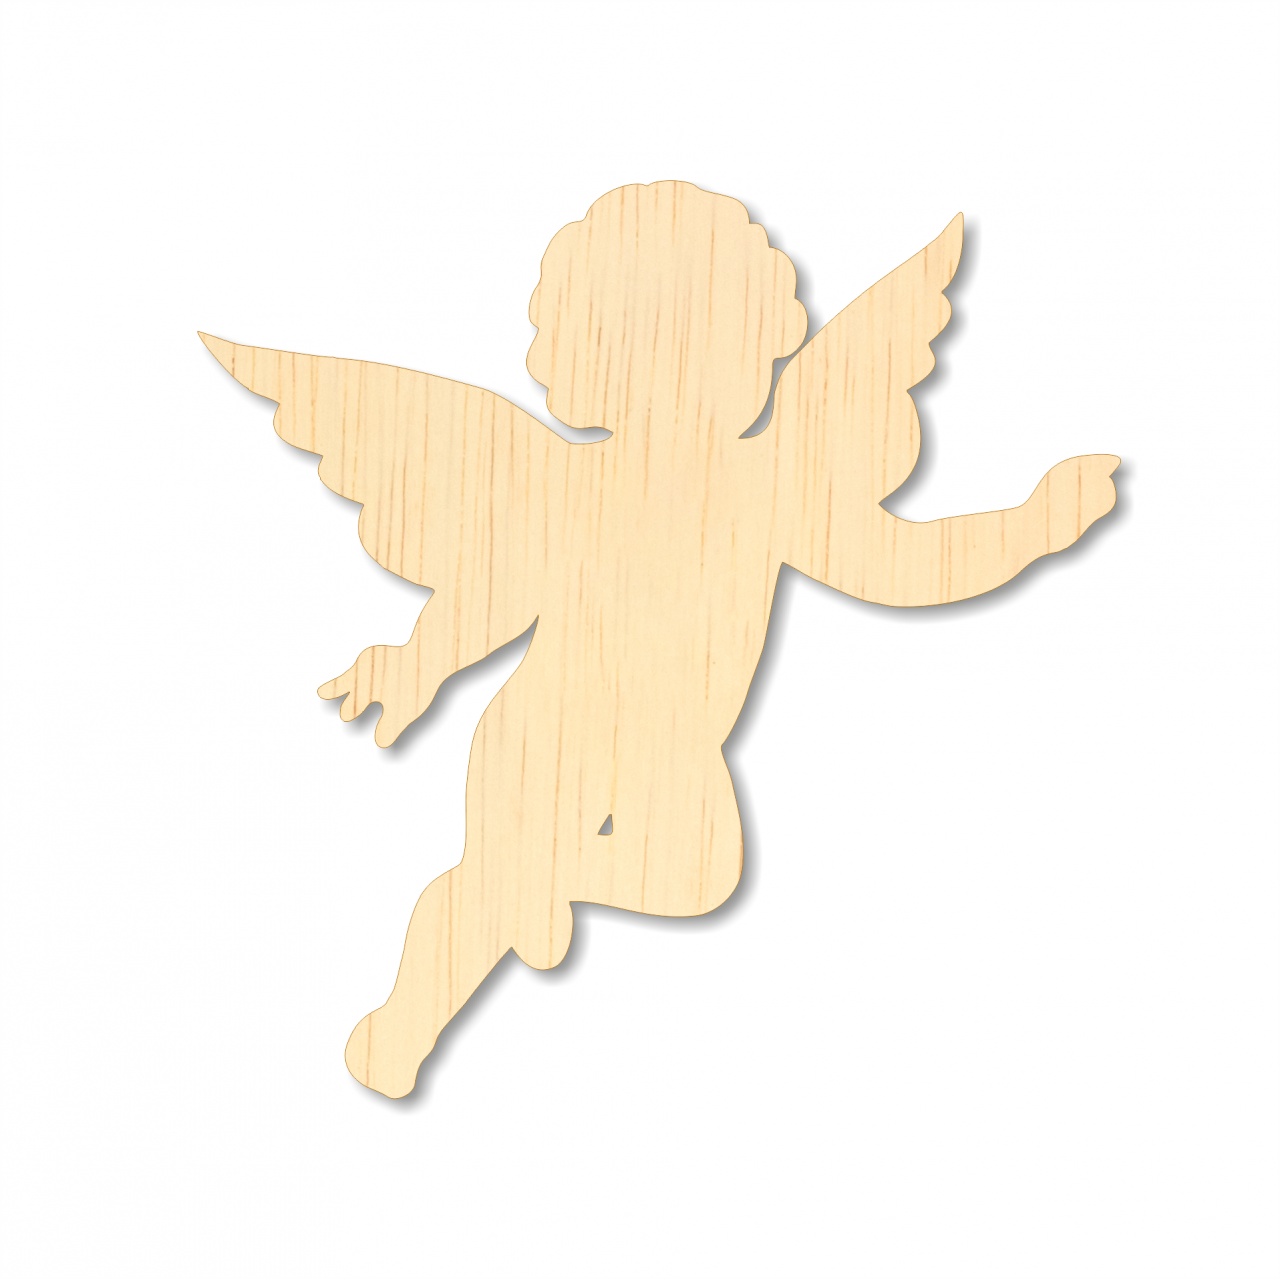 Îngeraș Cupidon cu inimă, 5 cm, placaj lemn